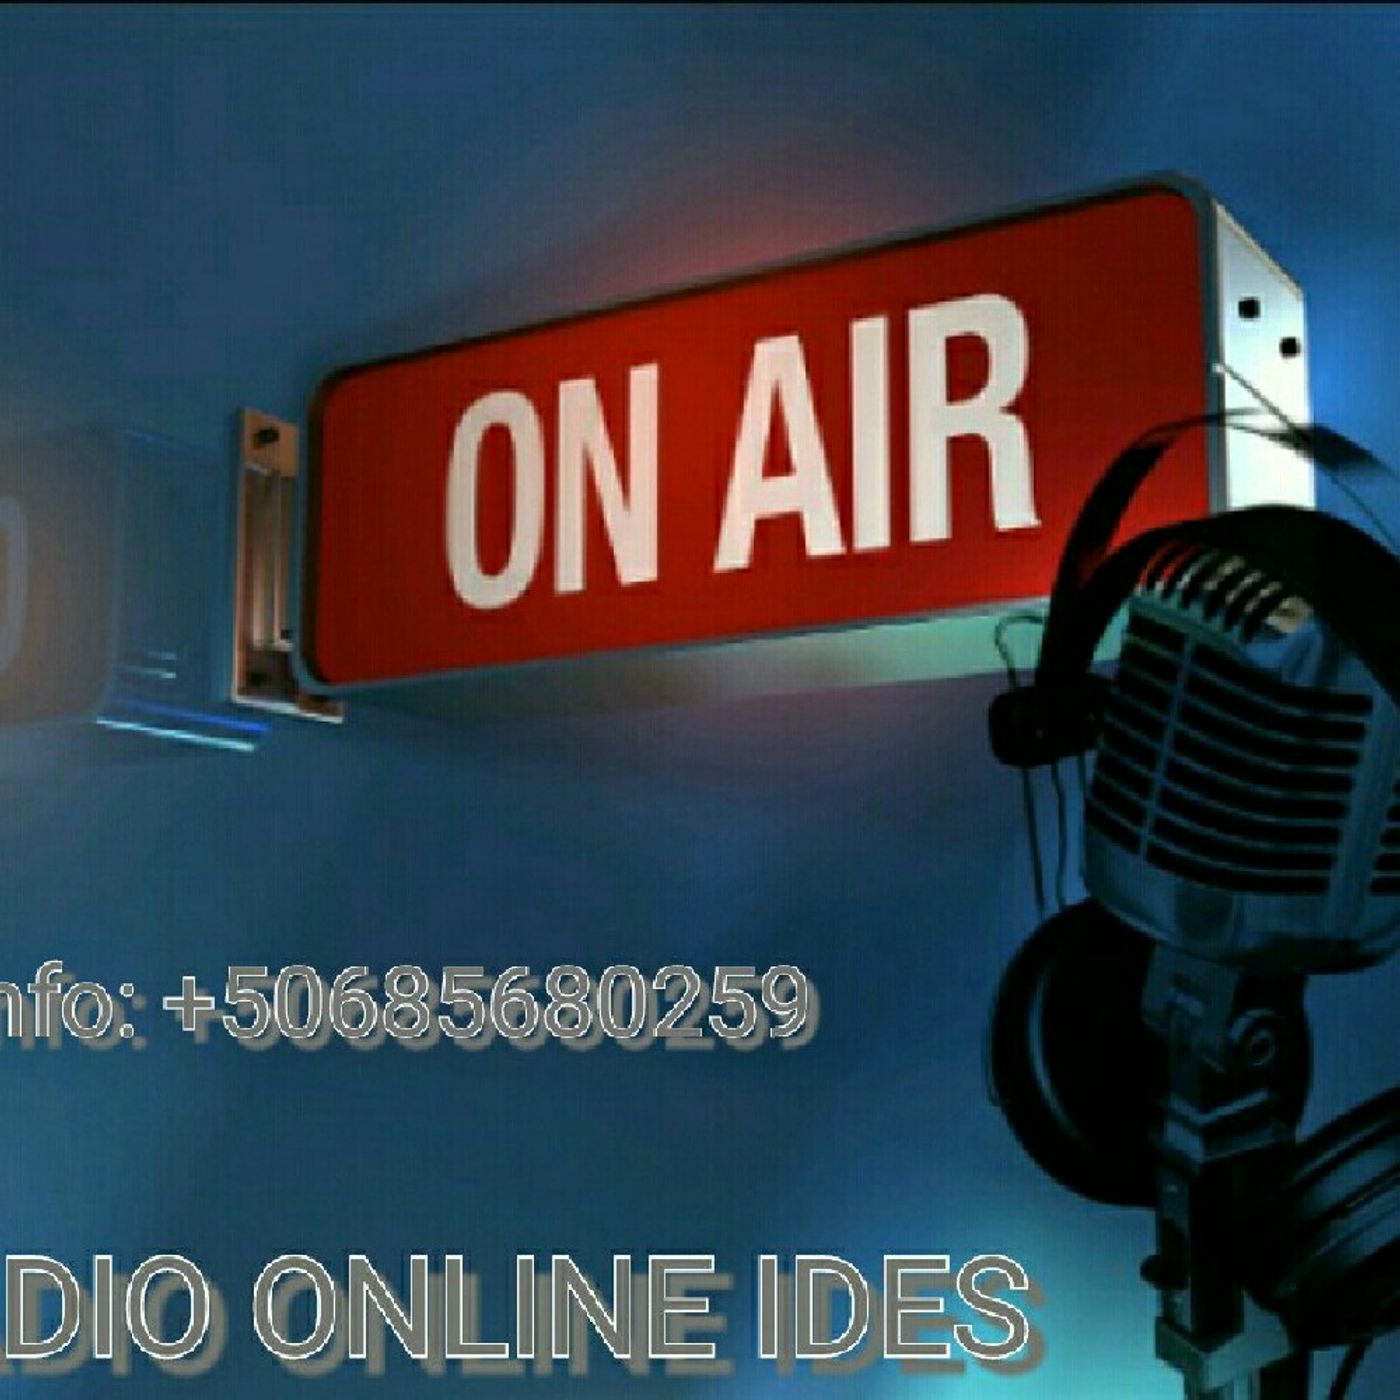 Estacion De Radio. Online IDES.